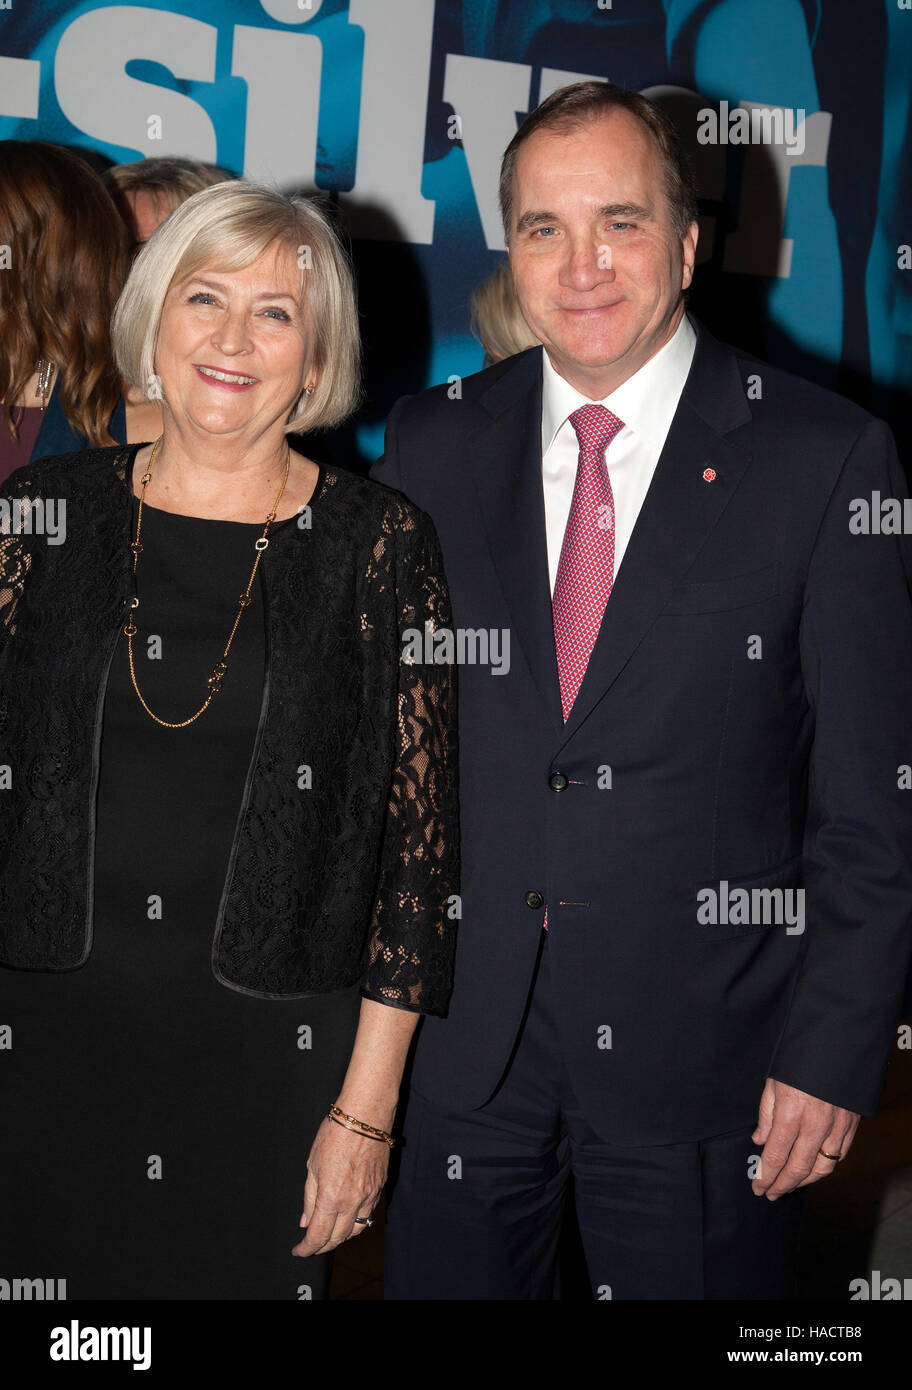 STEFAN LÖFVÈN il Primo ministro svedese con la moglie Ulla alla svedese di calcio annuale di gala Foto Stock